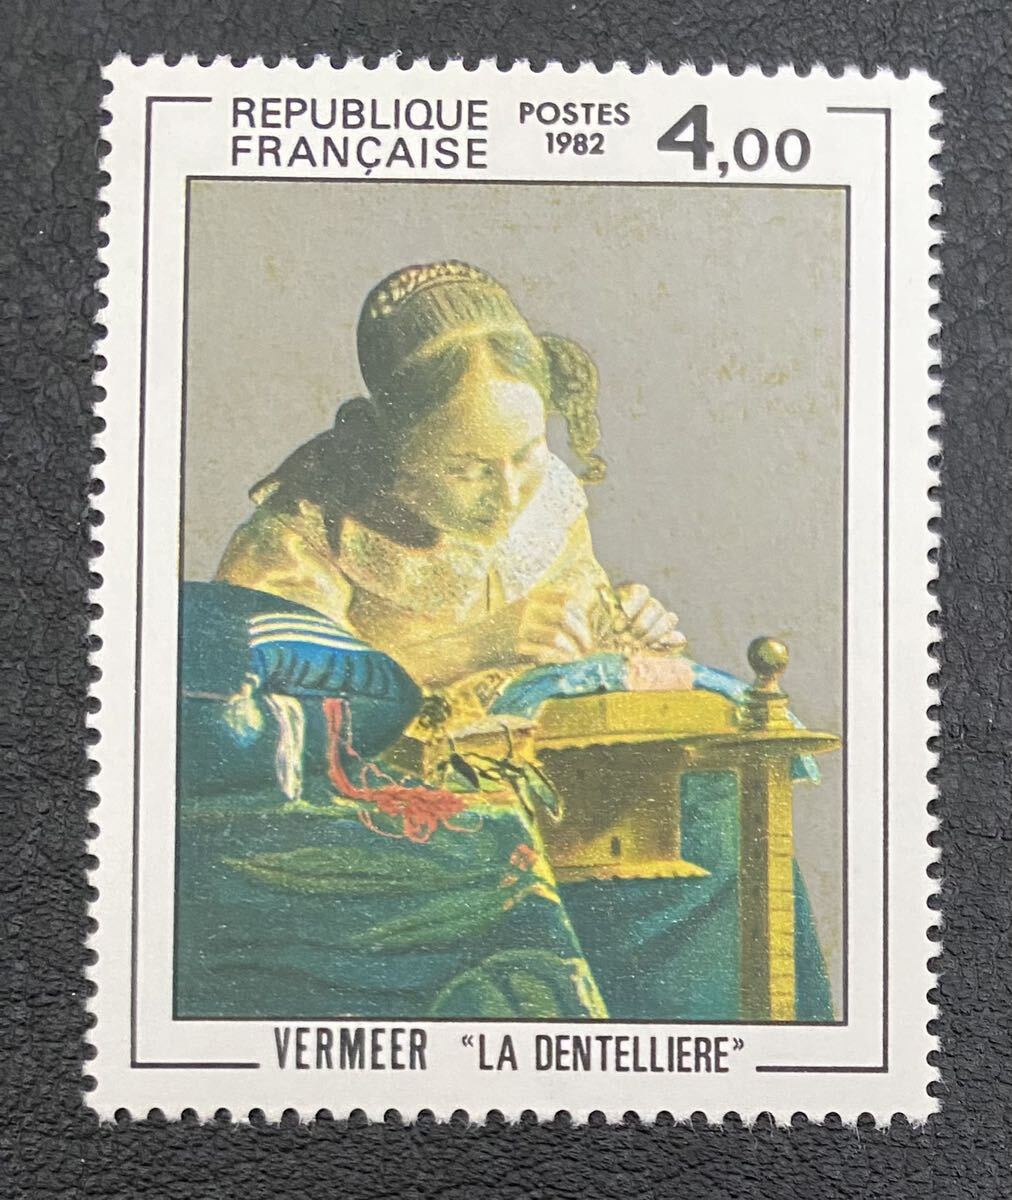 Francia Vermeer Lacemaker Pintura Bellas Artes 1 pieza completa sin usar NH, antiguo, recopilación, estampilla, Tarjeta postal, Europa